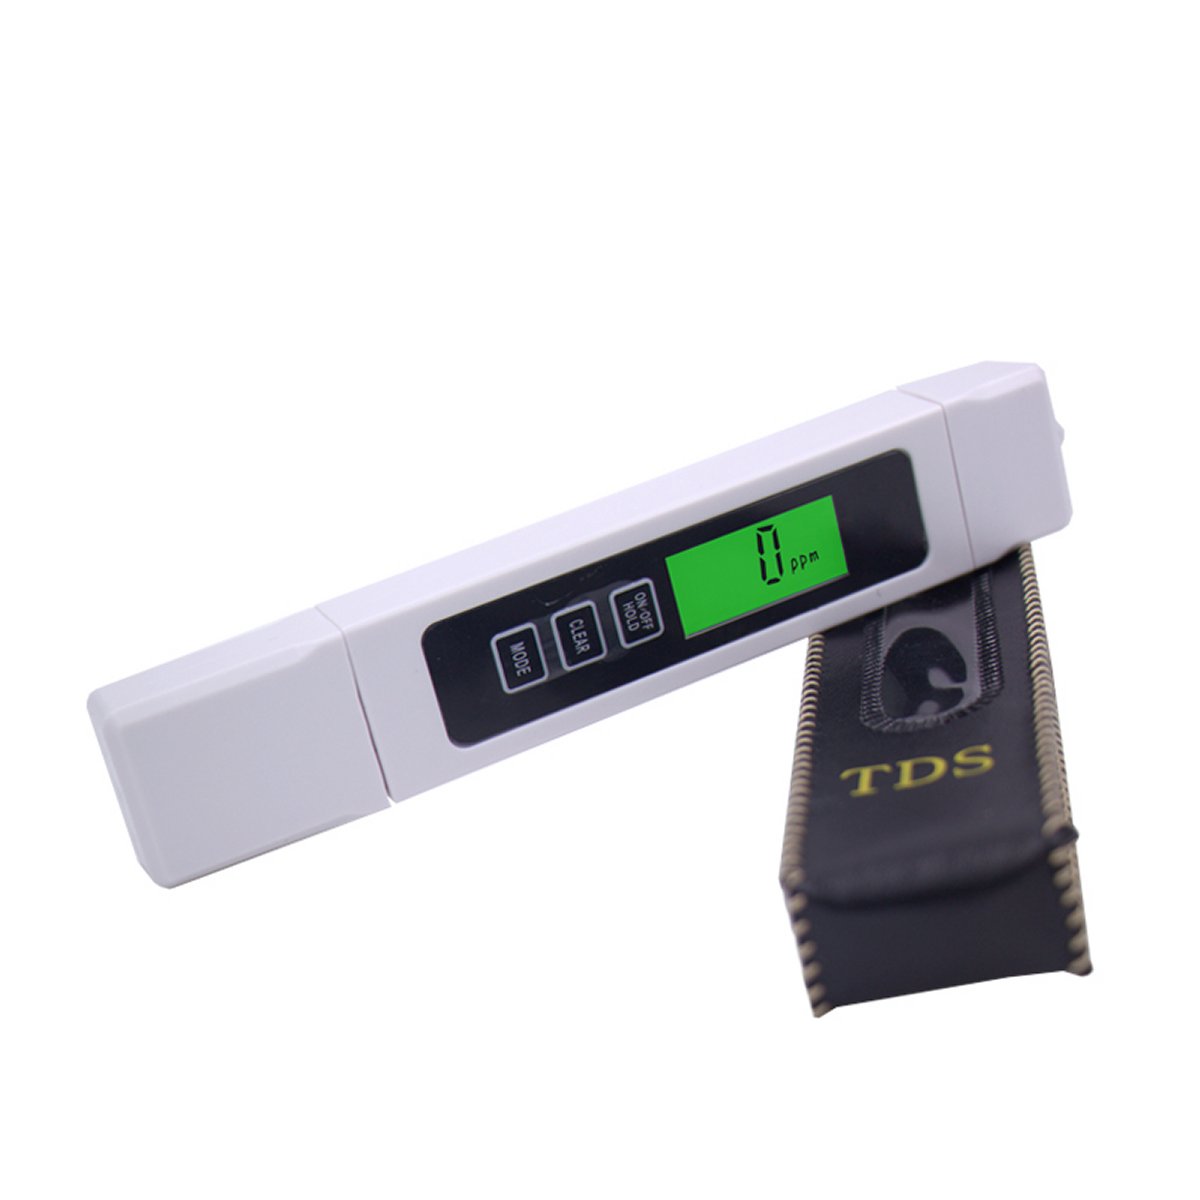 / 2% Tascabile con Schermo LCD per Acqua Potabile Acquario Piscina Idroponica Spa Laboratorio ESYNiC TDS-EC Misuratore Digitale di Qualità dellAcqua TDS Tester Pen Stick PPM Filtro Precisione 